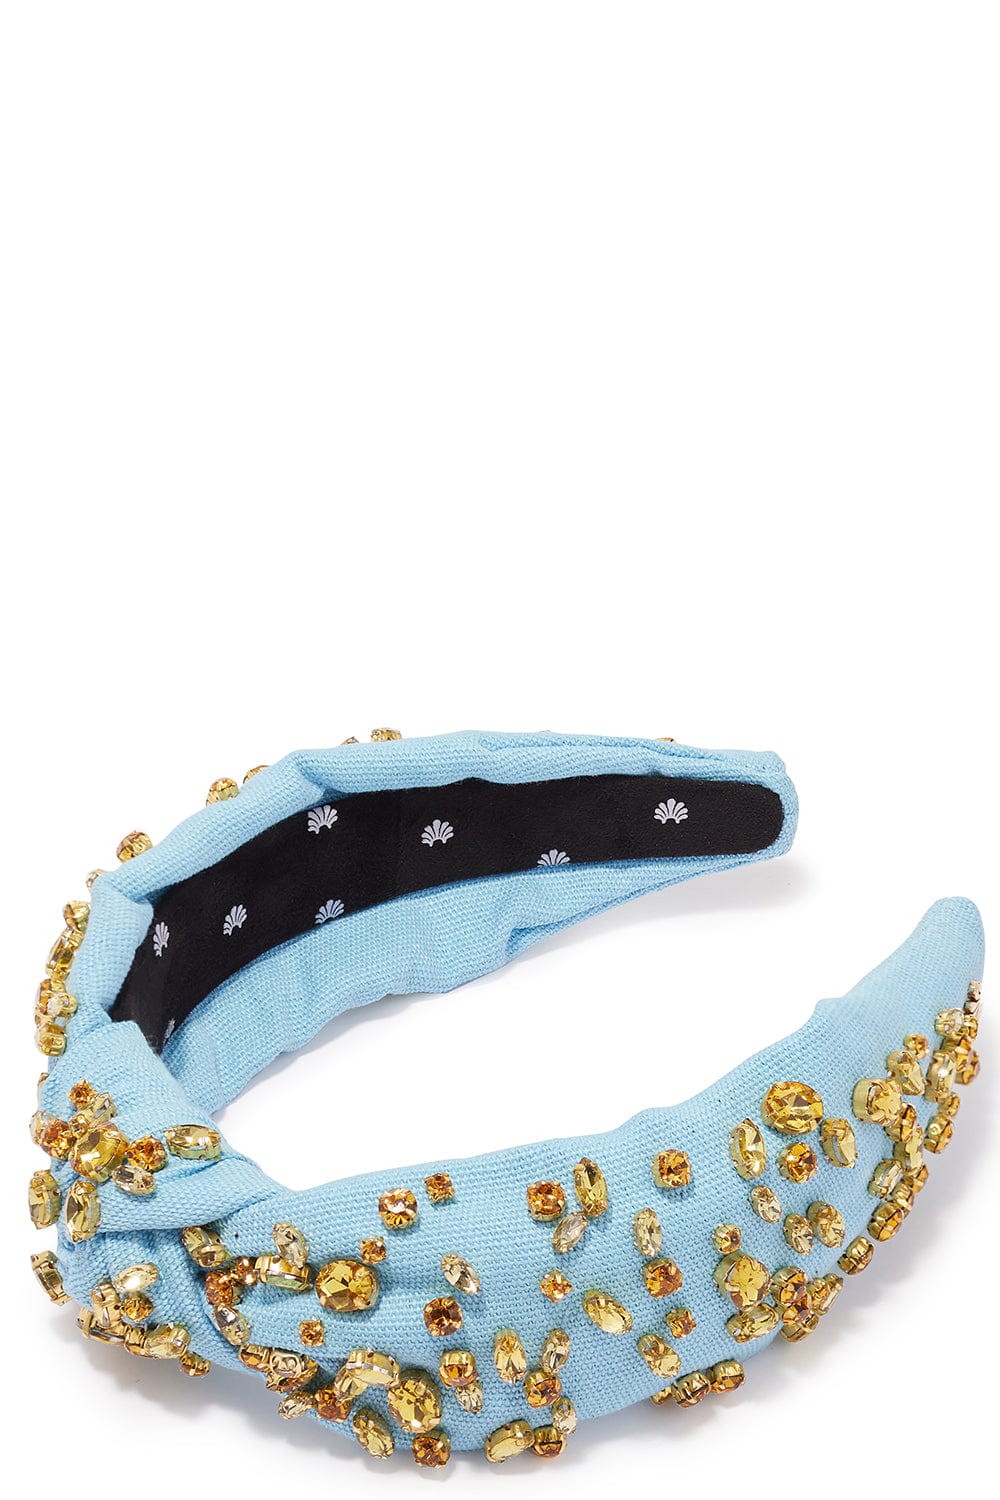 LELE SADOUGHI DESIGNS-Jeweled Knotted Headband - Sunshine-SUNSHINE